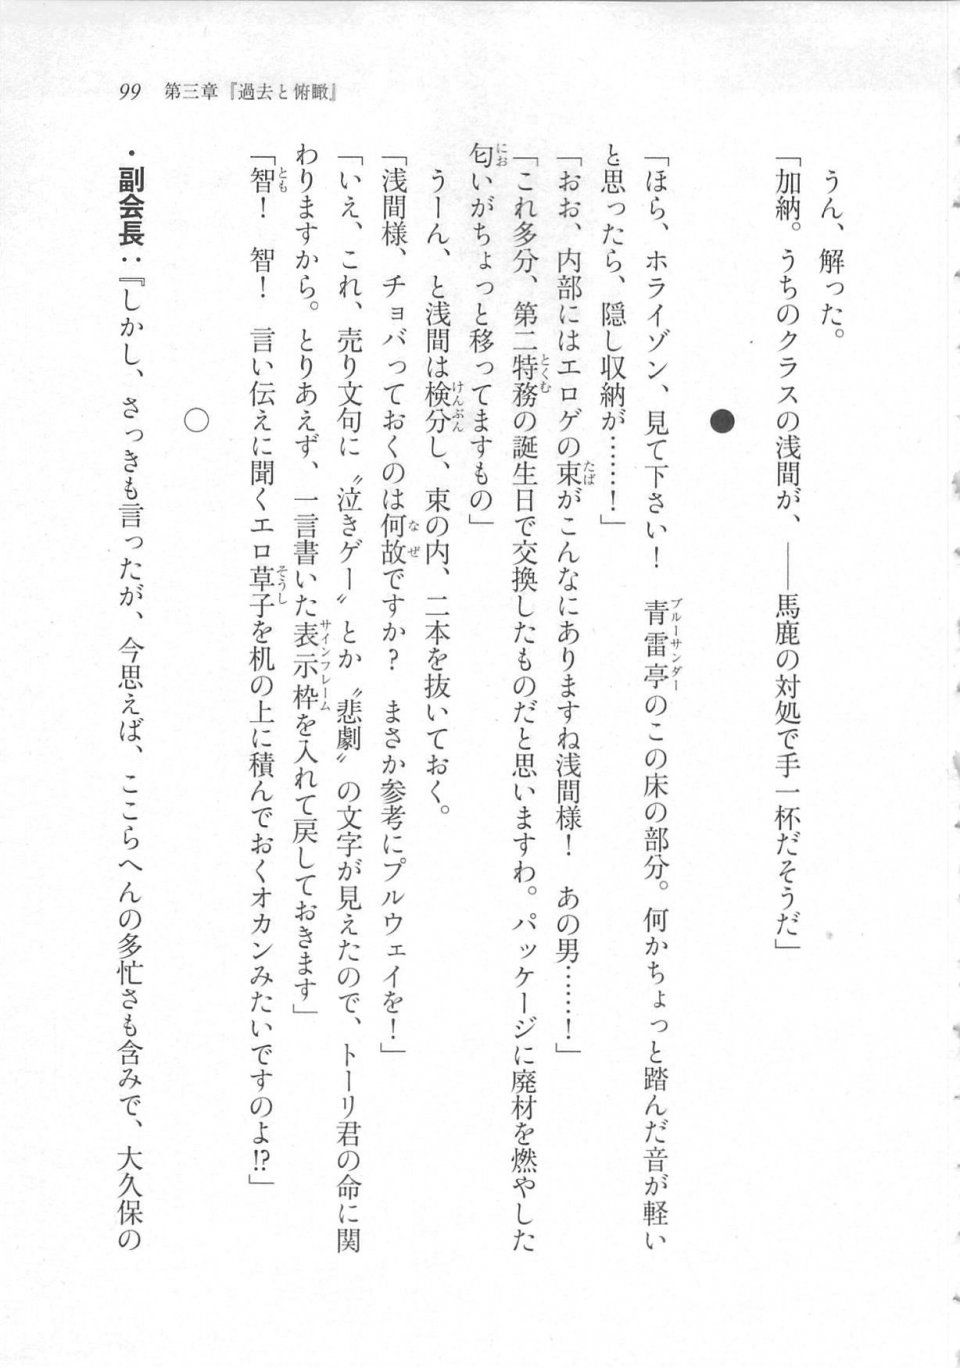 Kyoukai Senjou no Horizon LN Sidestory Vol 3 - Photo #103